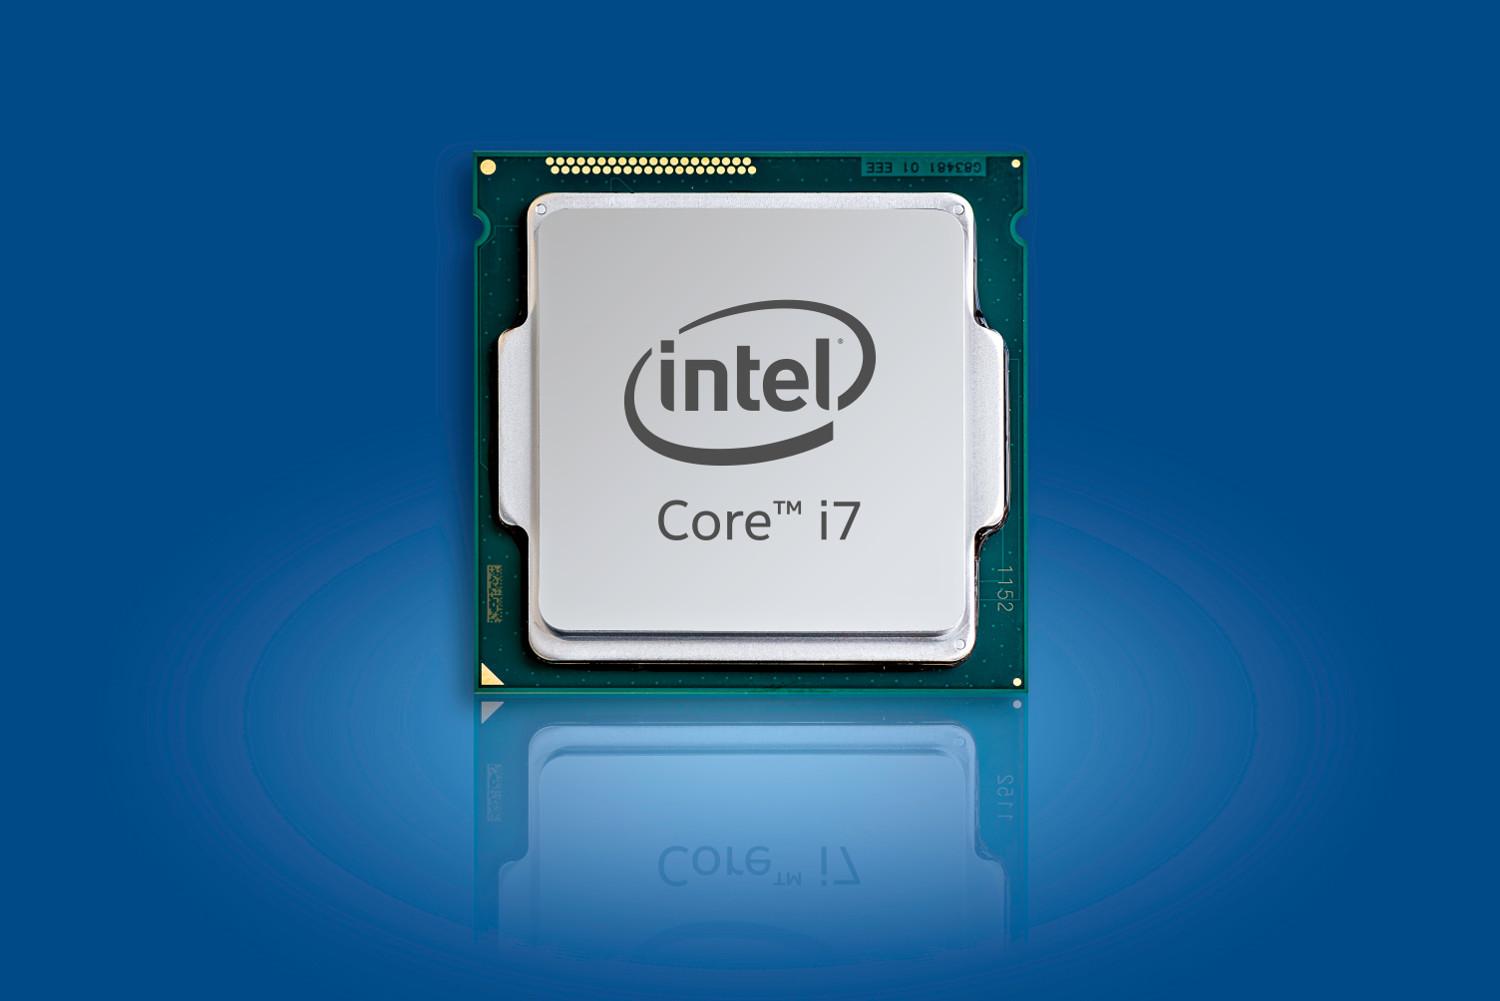 Модели интел. Процессор Intel Core i7-9700k. Intel Core i7-10700f lga1200, 8 x 2900 МГЦ. Процессор Intel Core i7 10700. Процессор Intel Core i7-8700k.